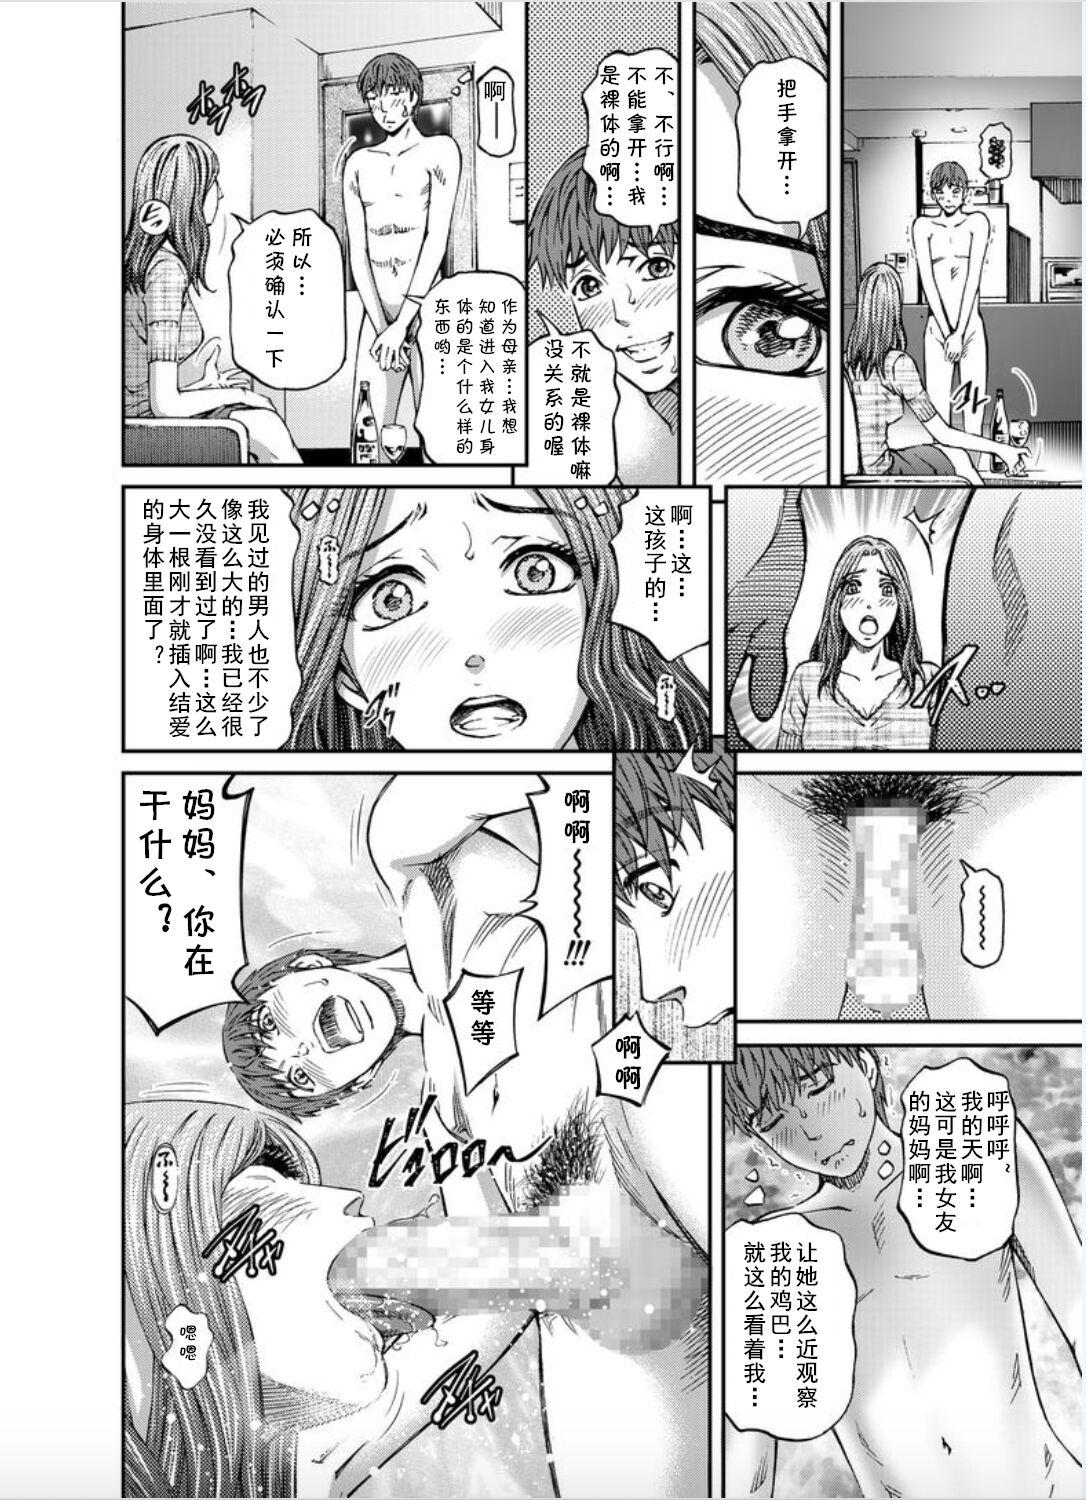 Stretching Onna-tachi ga Iku Toki... Ero Drama Vol. 8 Datte, Kanojo no Haha ga... Oral - Page 6